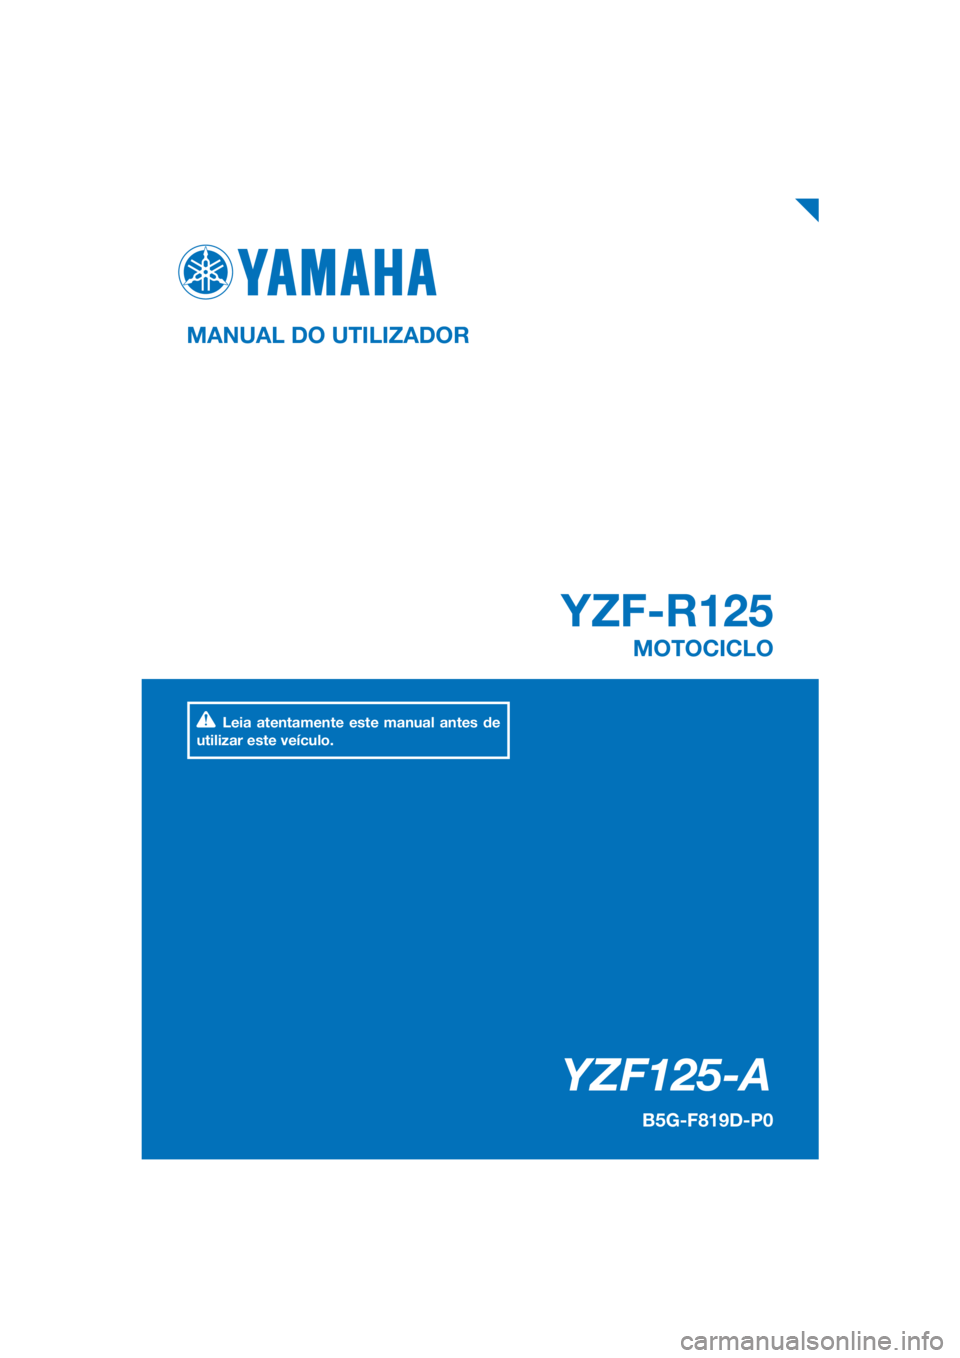 YAMAHA YZF-R125 2019  Manual de utilização (in Portuguese) PANTONE285C
YZF125-A
YZF-R125
MANUAL DO UTILIZADOR
B5G-F819D-P0
MOTOCICLO
Leia atentamente este manual antes de 
utilizar este veículo.
[Portuguese  (P)] 